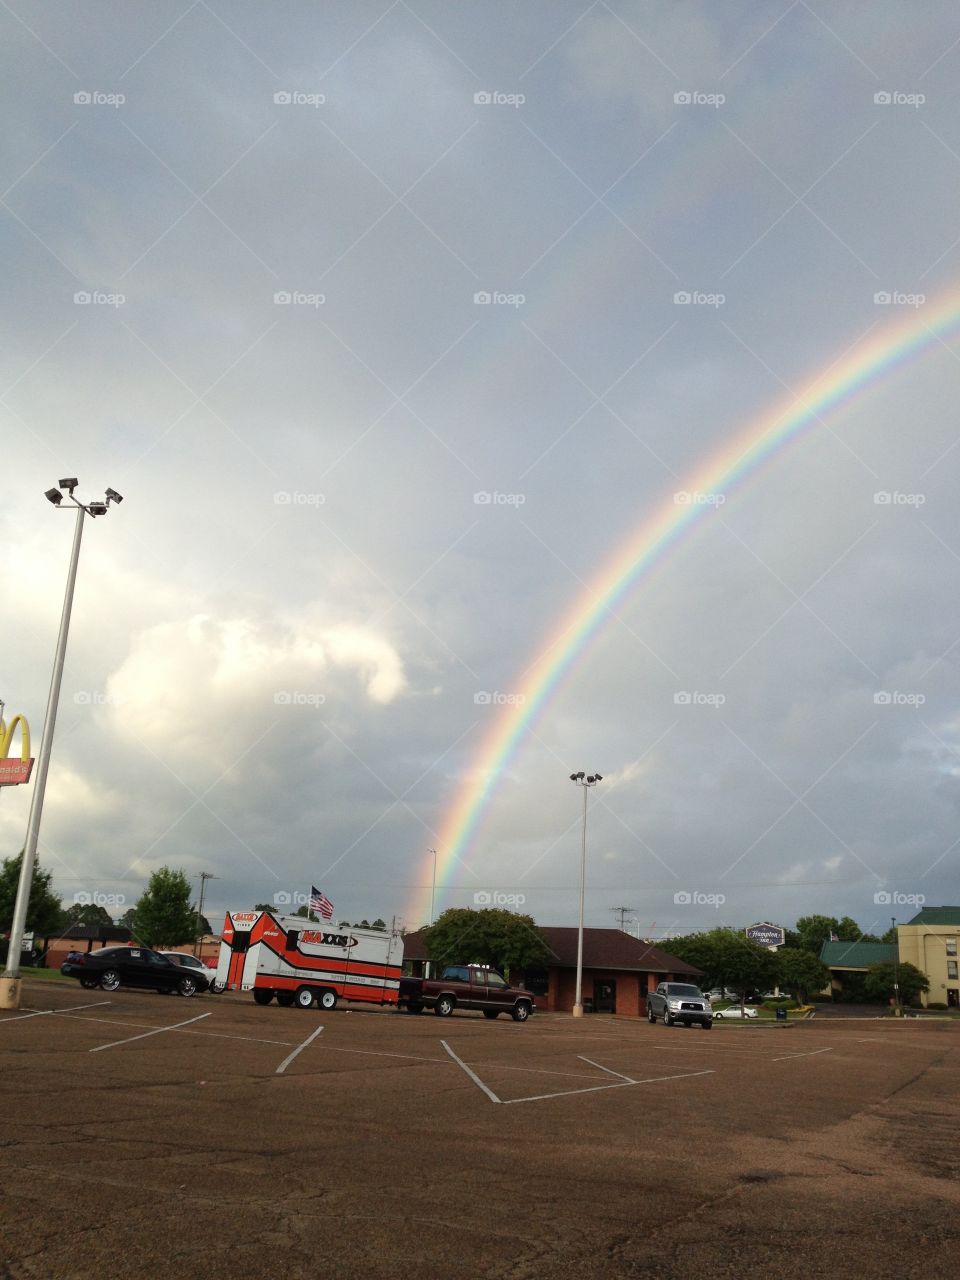 A beautiful rainbow in Starkville, MS.